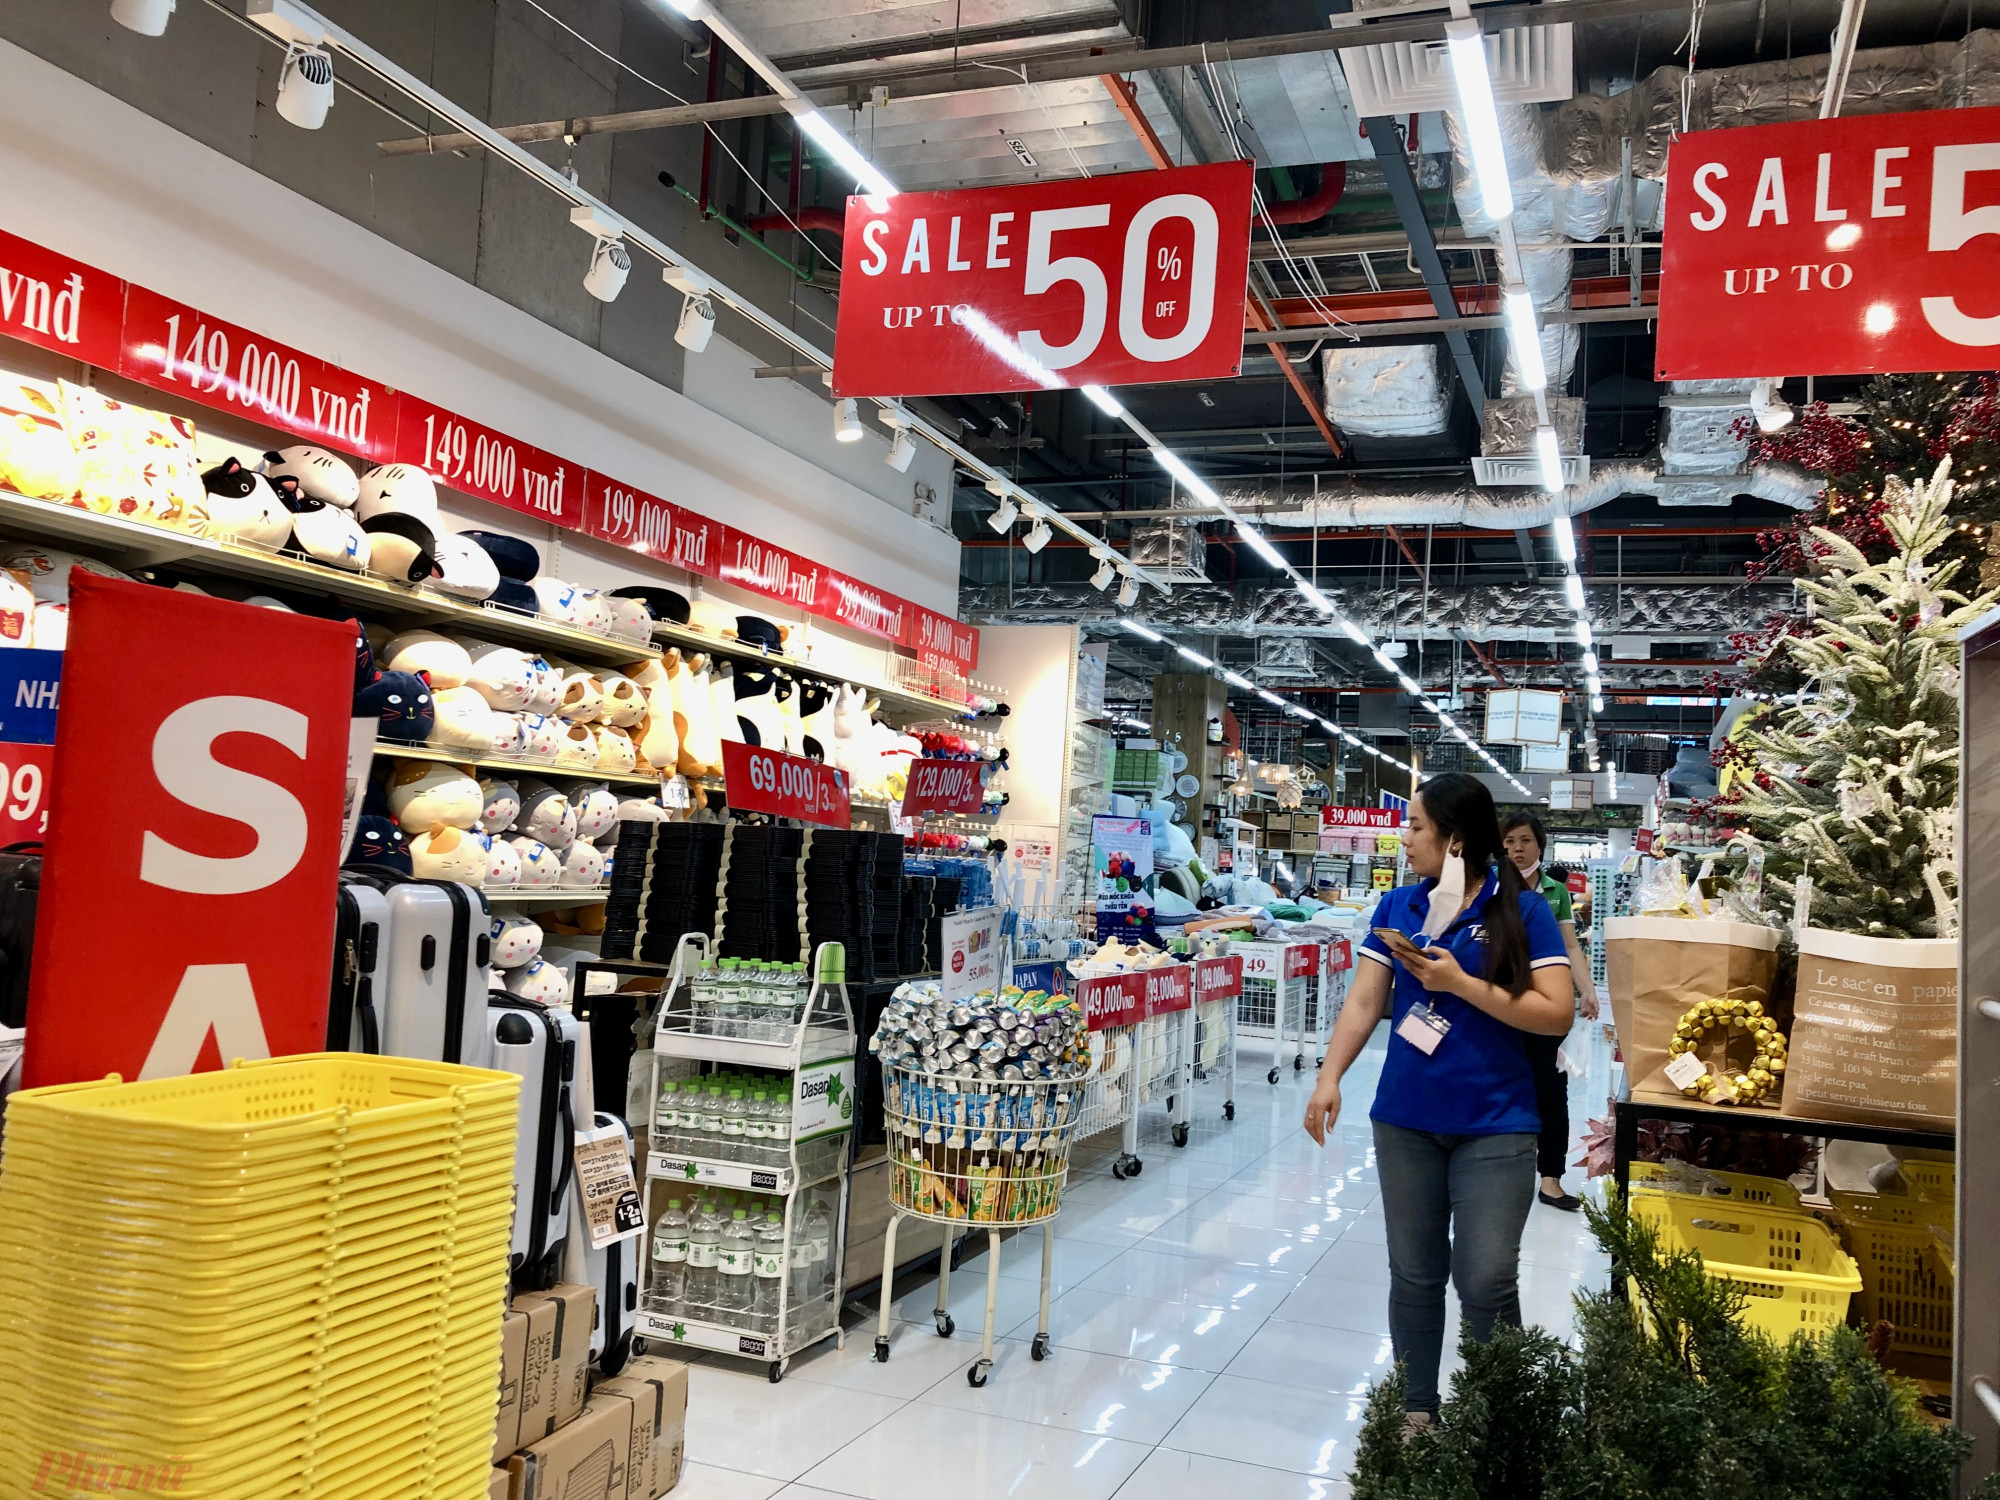 Tại trung tâm thương mại Aeonmall Bình Tân (quận Bình Tân, TPHCM), nhiều cửa hàng treo bảng giảm giá sâu đến 50% trong thời điểm từ đây đến cuối năm chứ không riêng gì ngày 12/12.